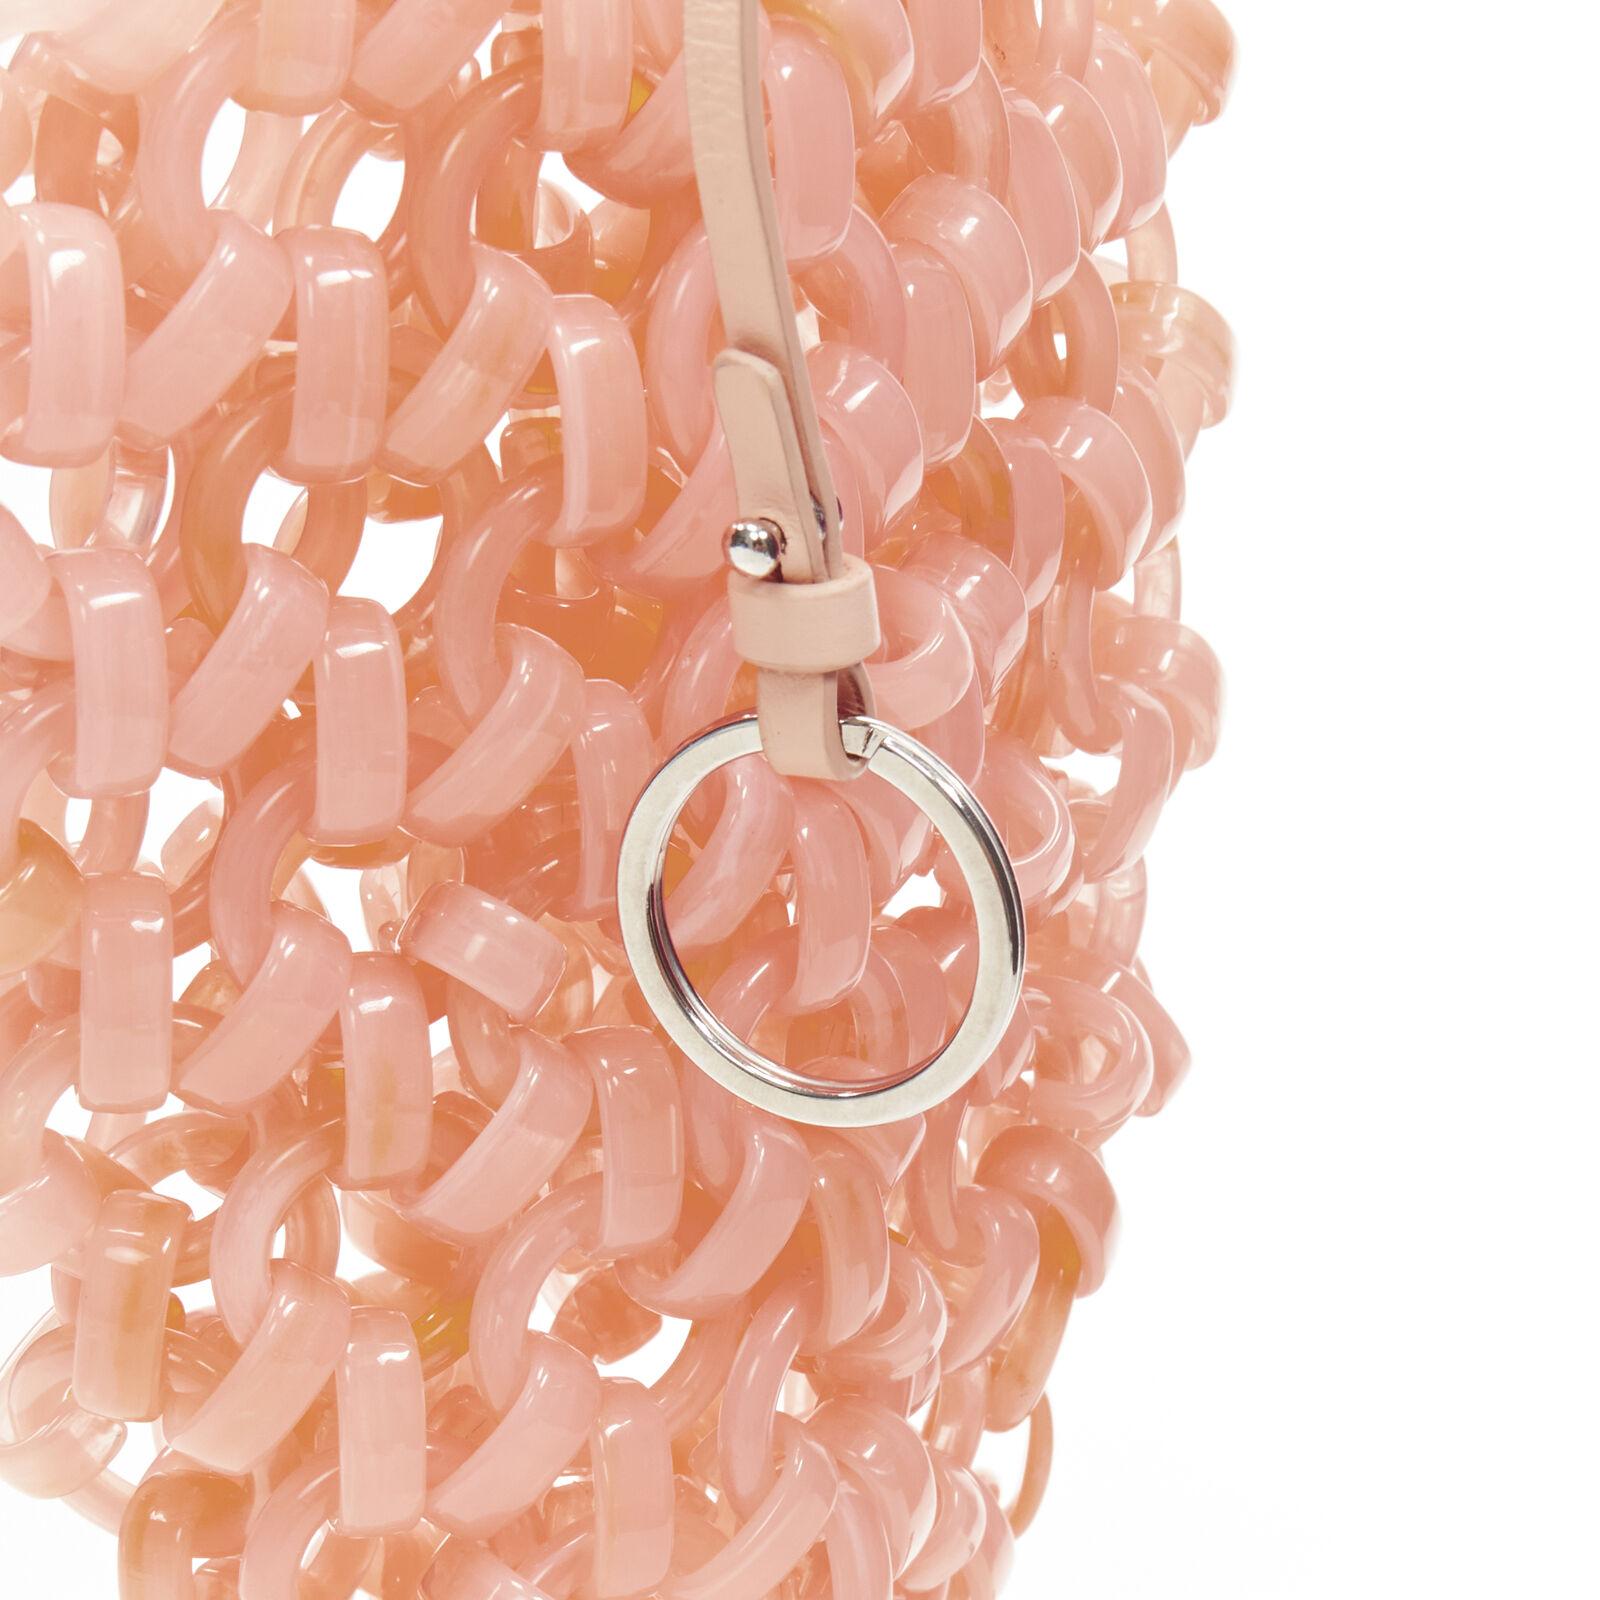 JIL SANDER coral pink chain link resin statement bag 4